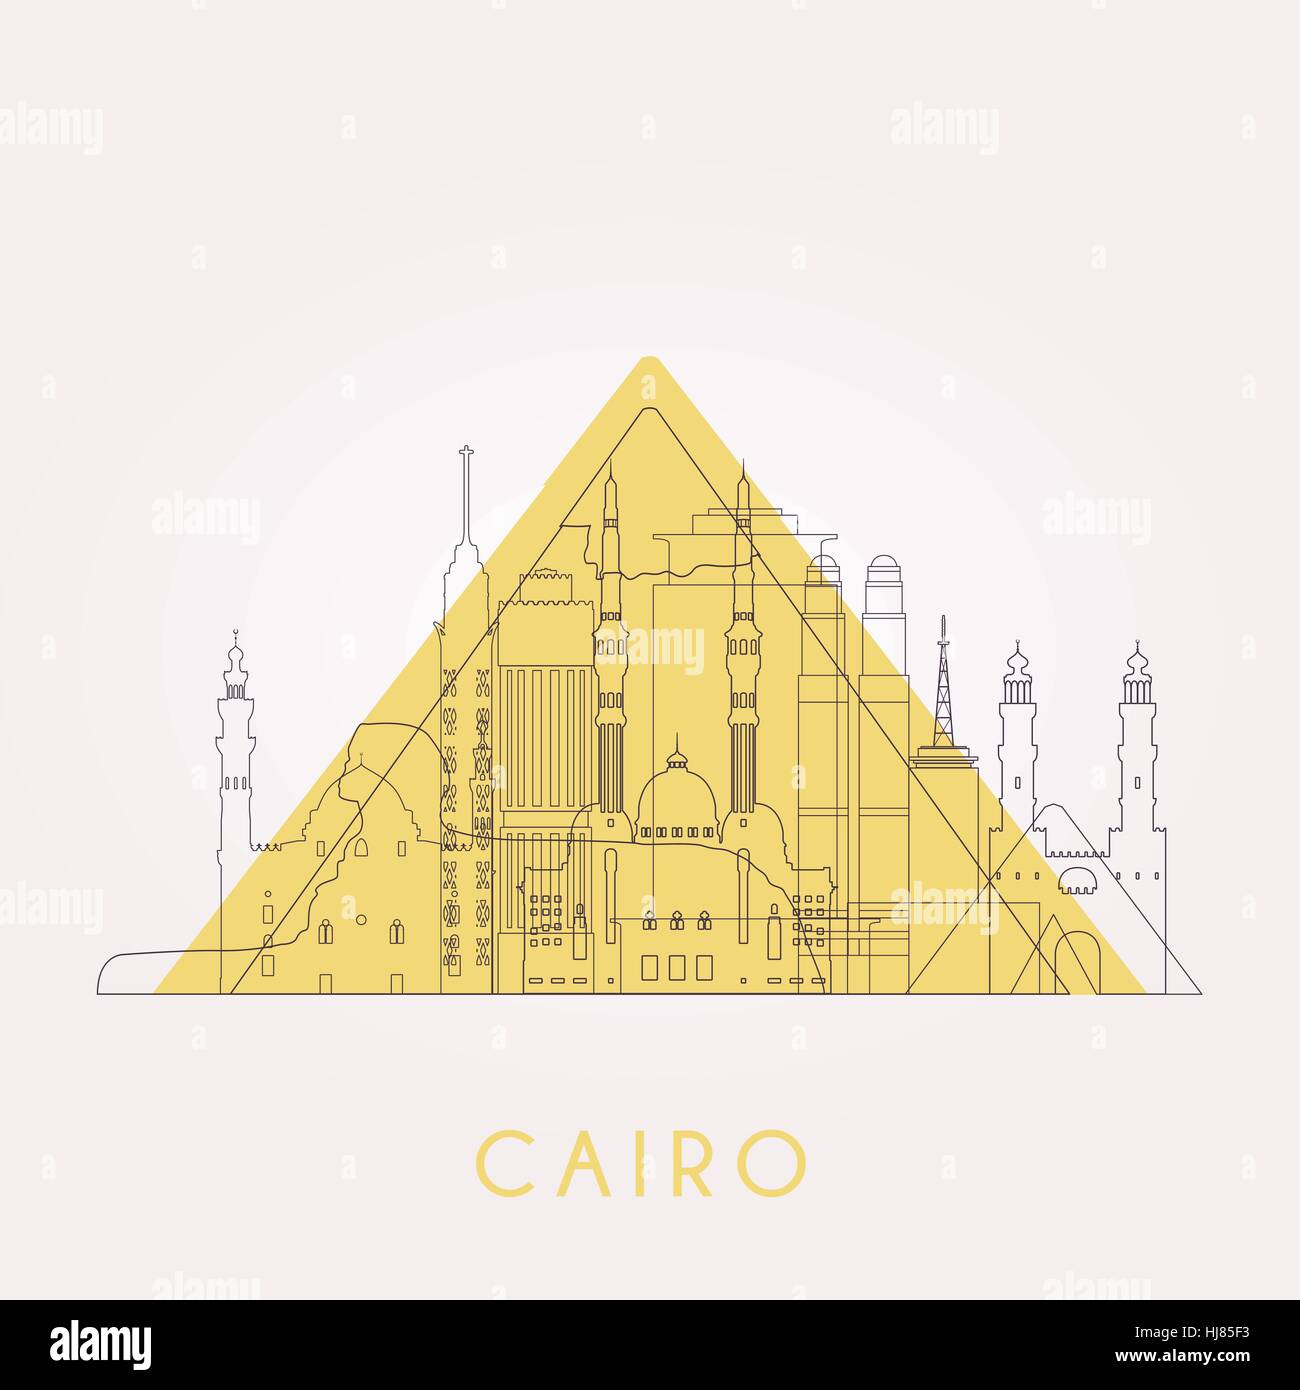 Presentacion El Cairo skyline con hitos. Ilustración vectorial. Viajes de negocios y turismo concepto con edificios históricos. Imagen de presentación, banner Ilustración del Vector